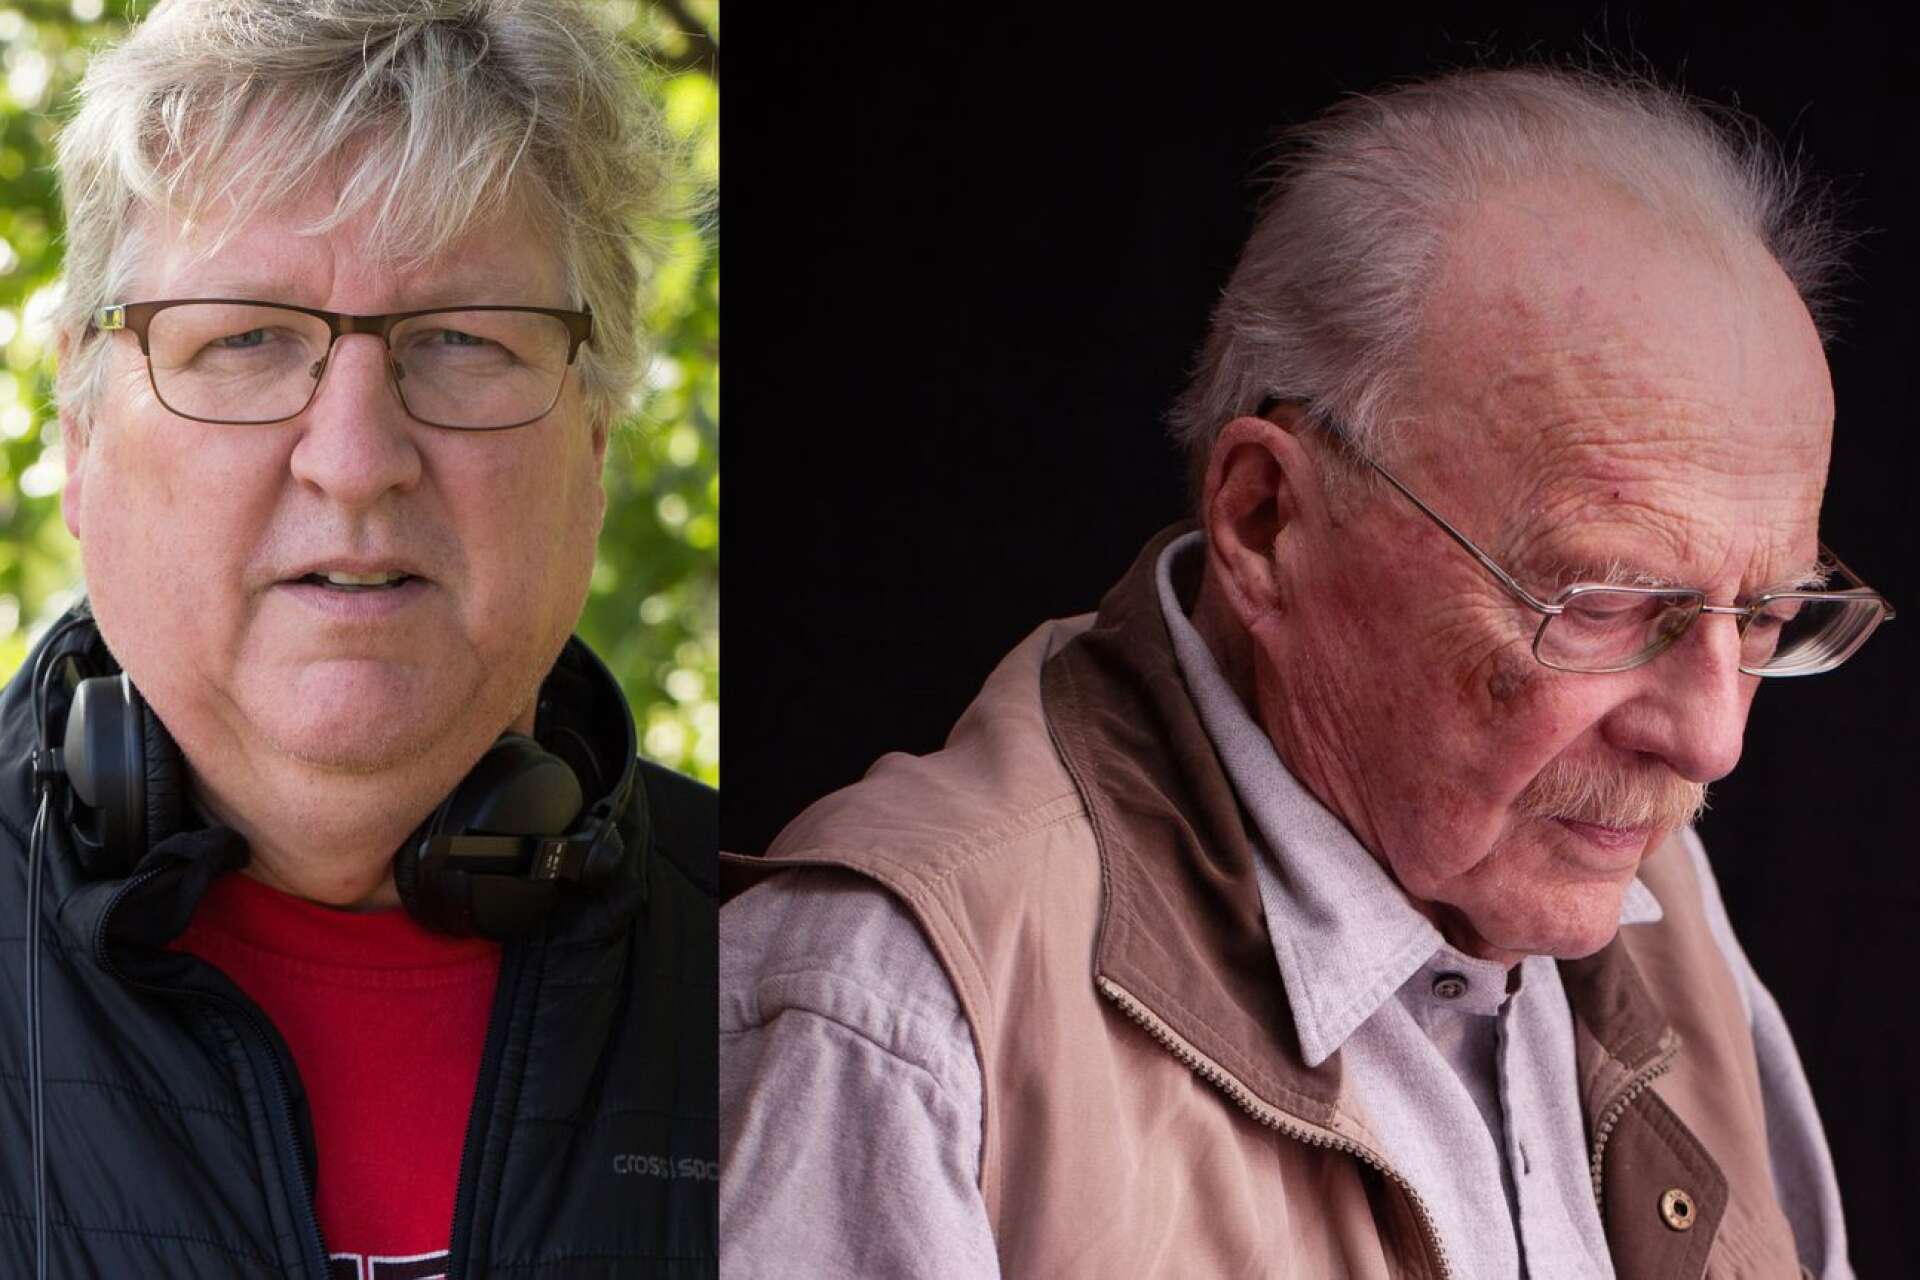 Bengt Löfgrens film följer Jan Myrdal under sina sista år i livet. &quot;Det intressanta har inte varit kontroverserna, i stället har vi fokuserat på åldrandet&quot;, menar den värmländske filmaren.